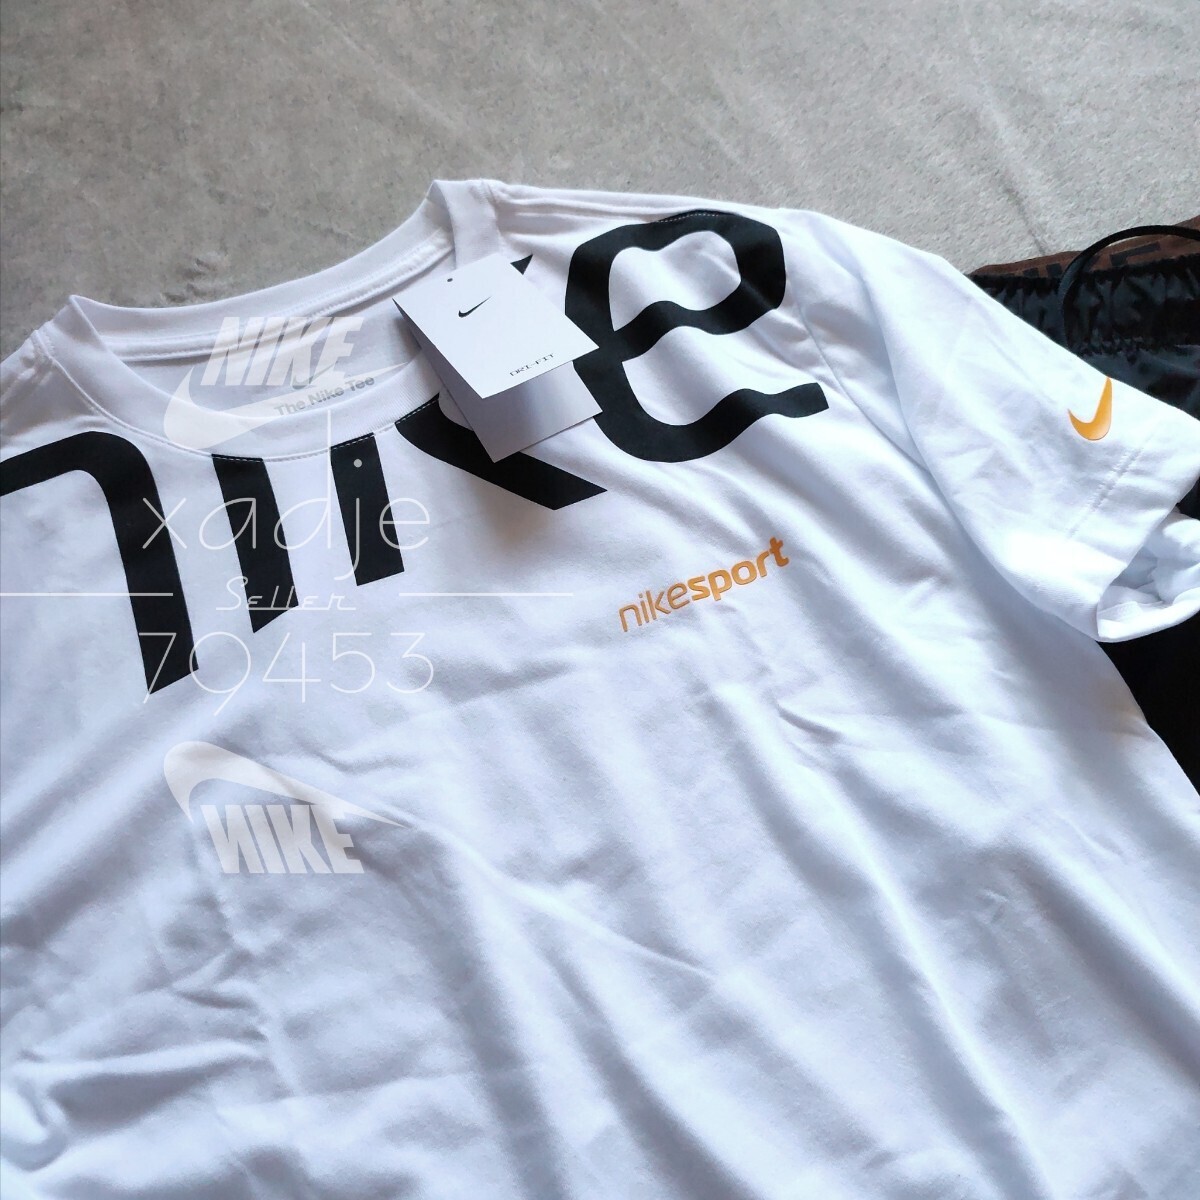 新品 正規品 NIKE ナイキ上下セット Tシャツ ハーフパンツ ロゴ プリント セットアップ NIKE SPORT 白 ホワイト 黒 ブラック M_画像2